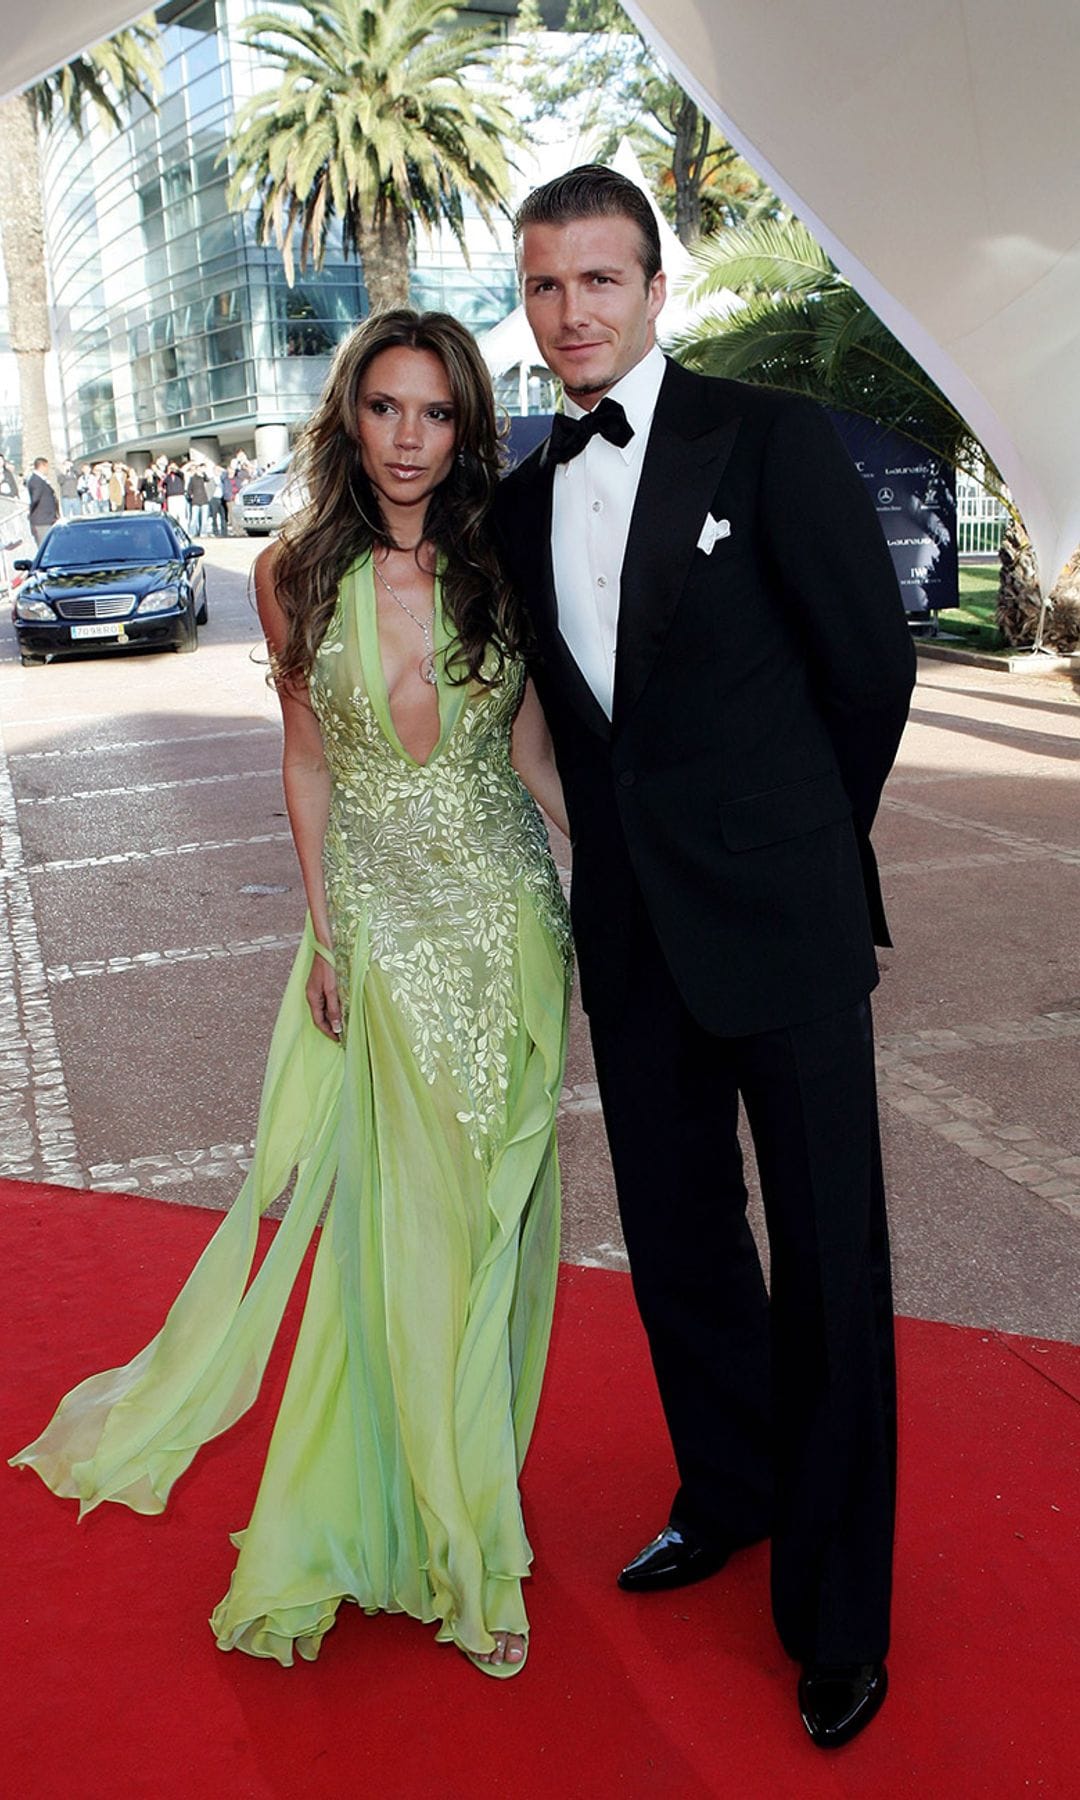 Victoria y David Beckham vestidos de gala vestido verde lentejuelas y traje